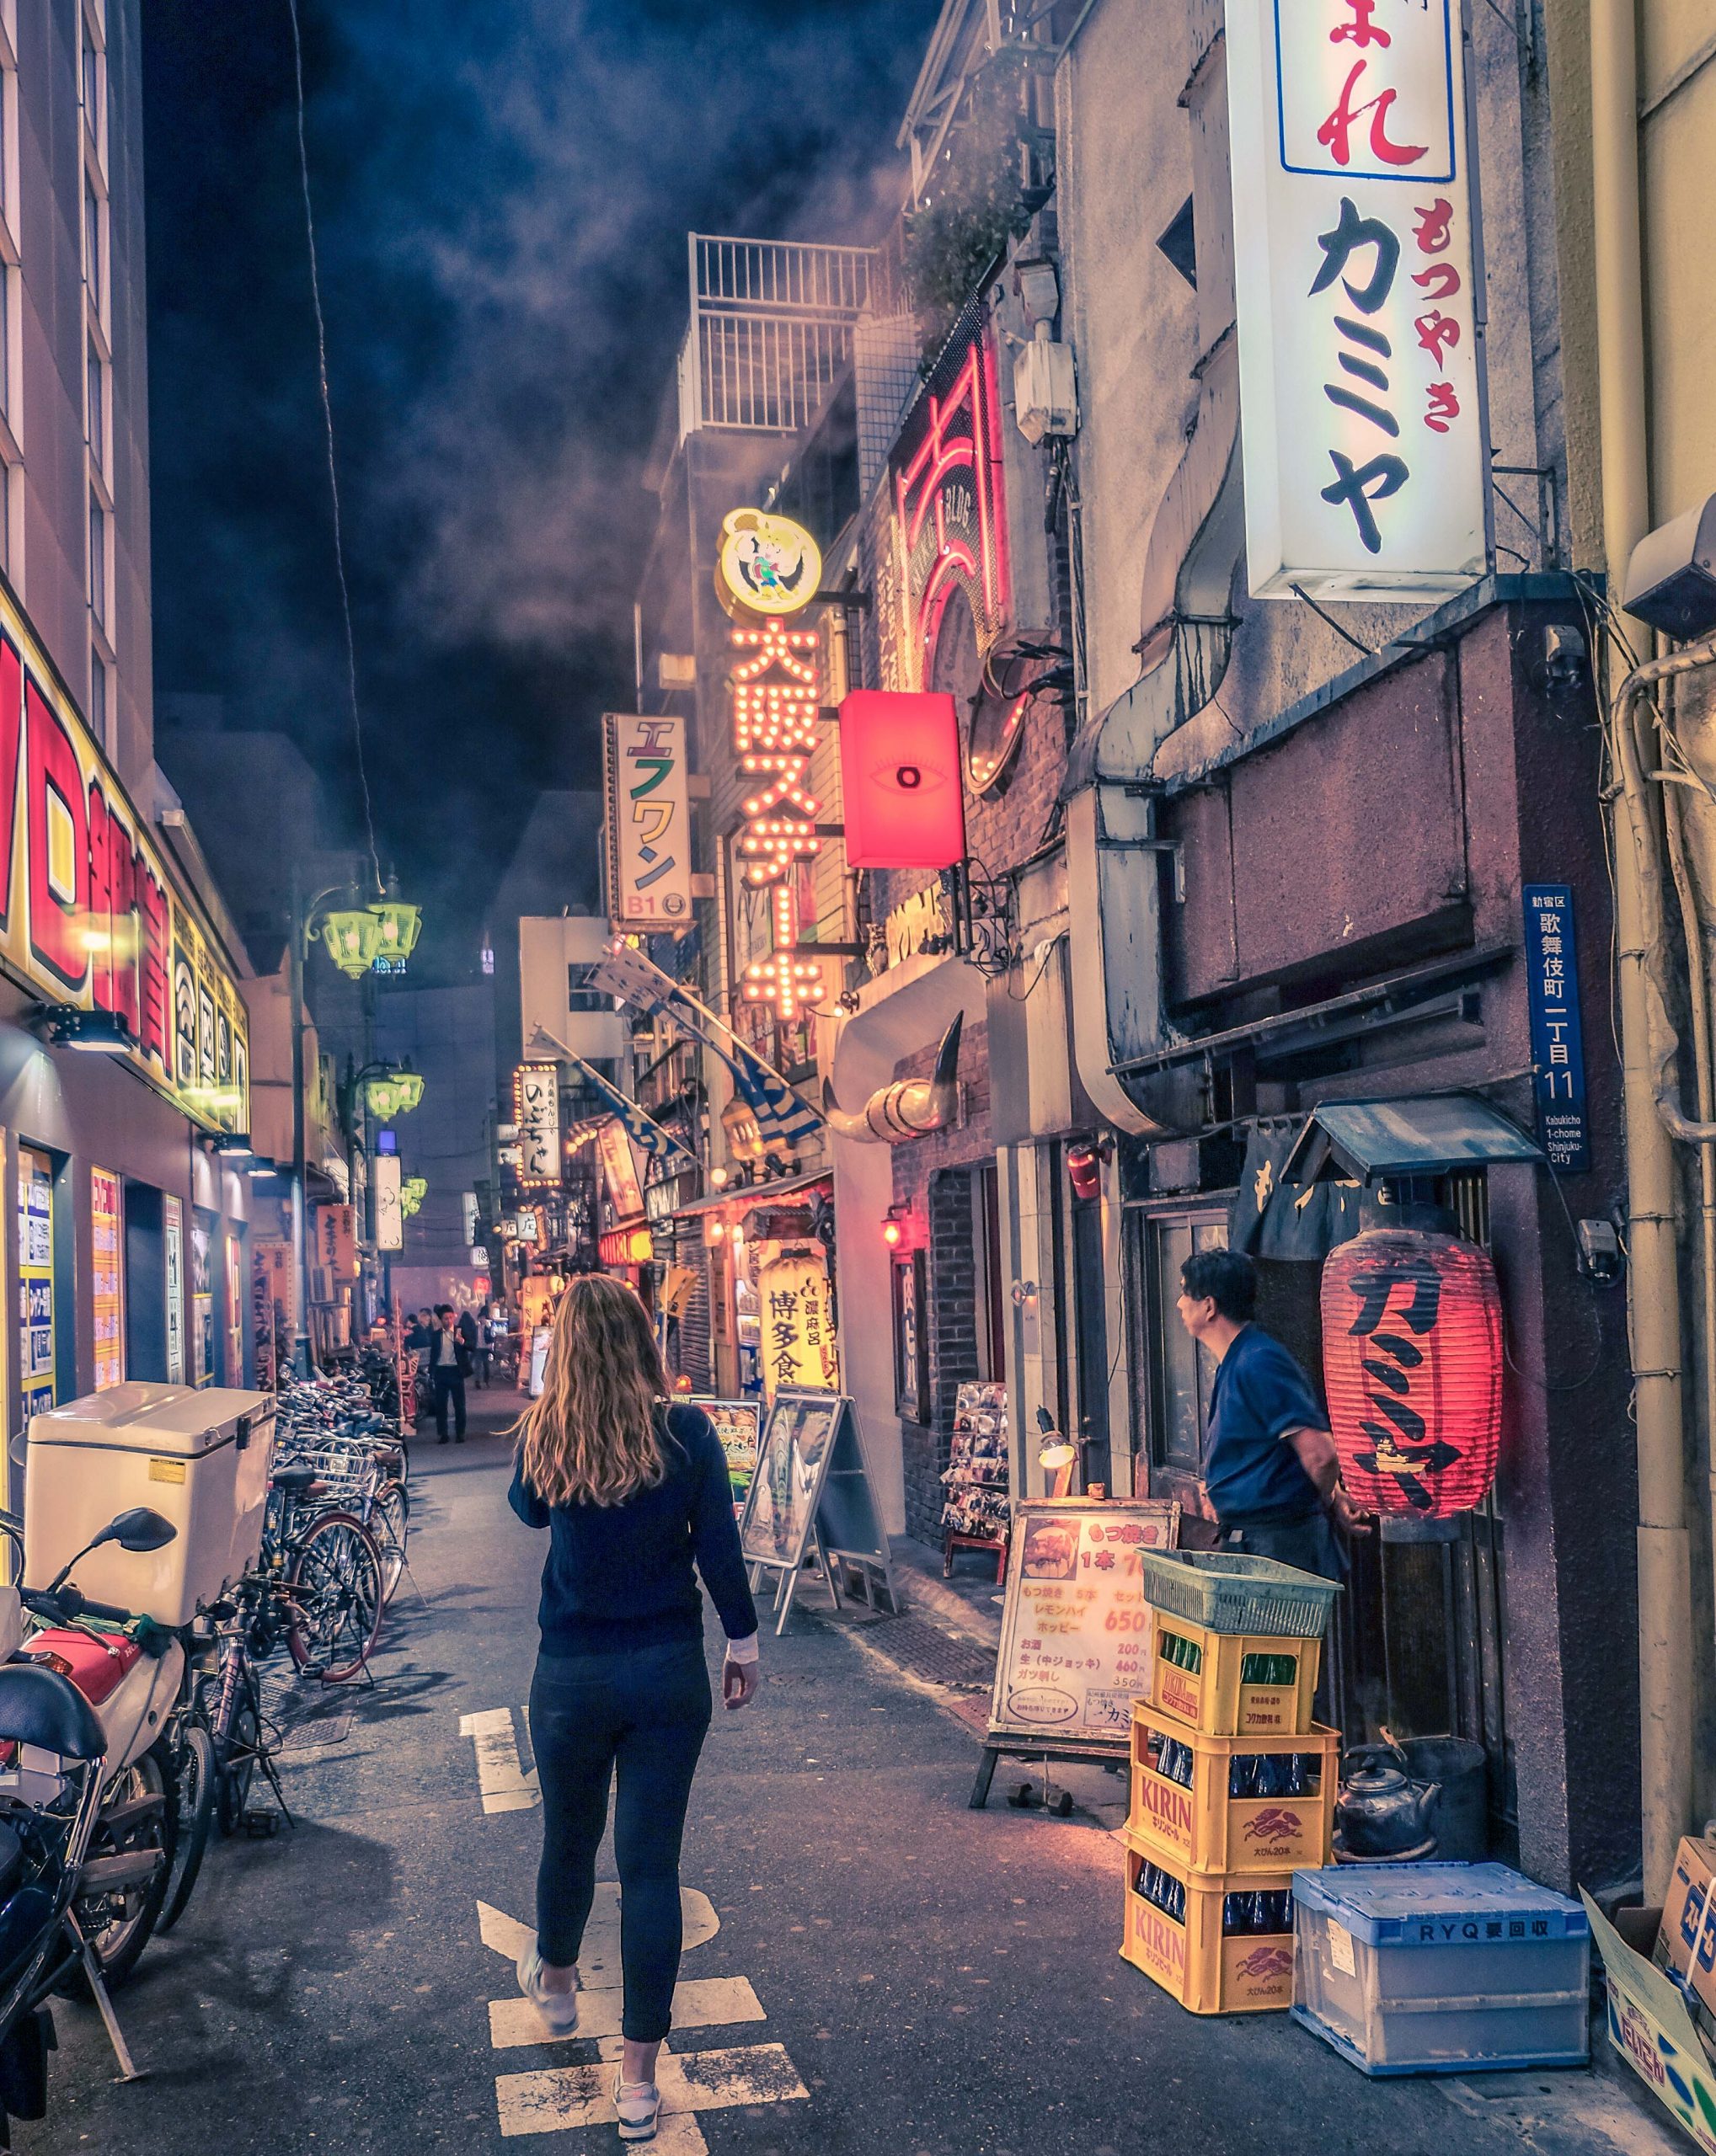 Cory exploring Shinjuku streets at night